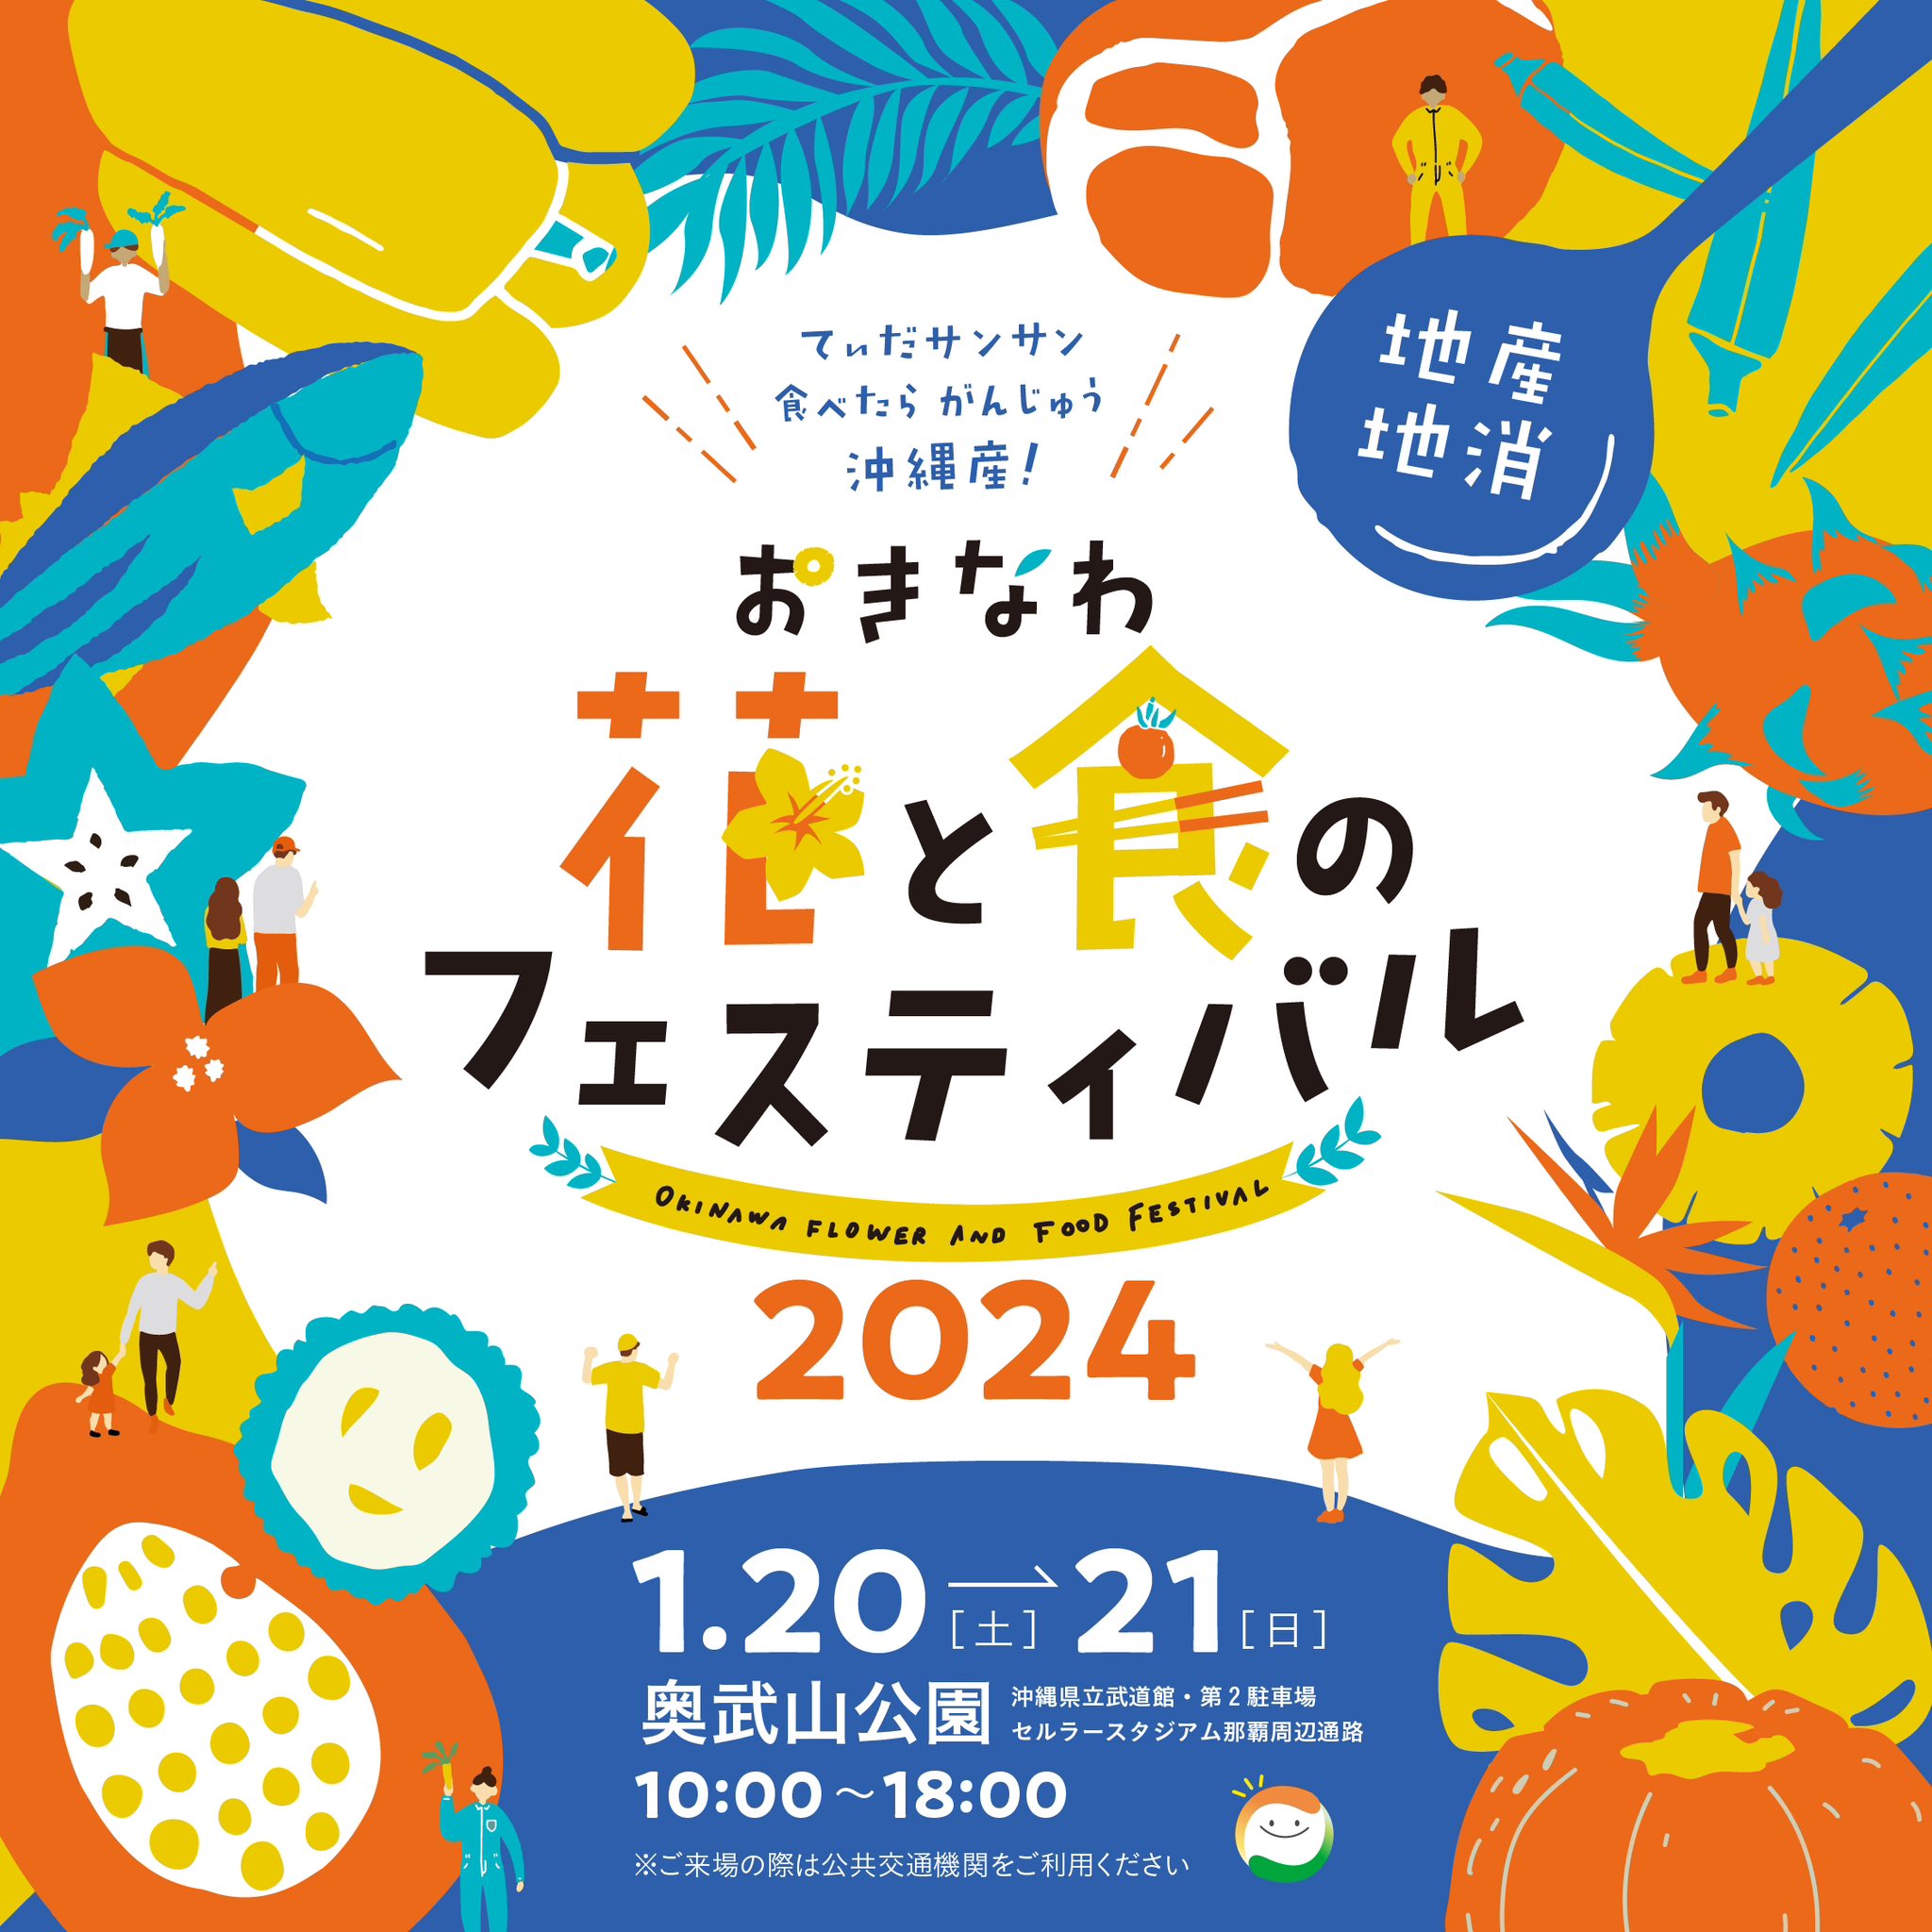 「おきなわ花と食のフェスティバル2024」のフライヤー